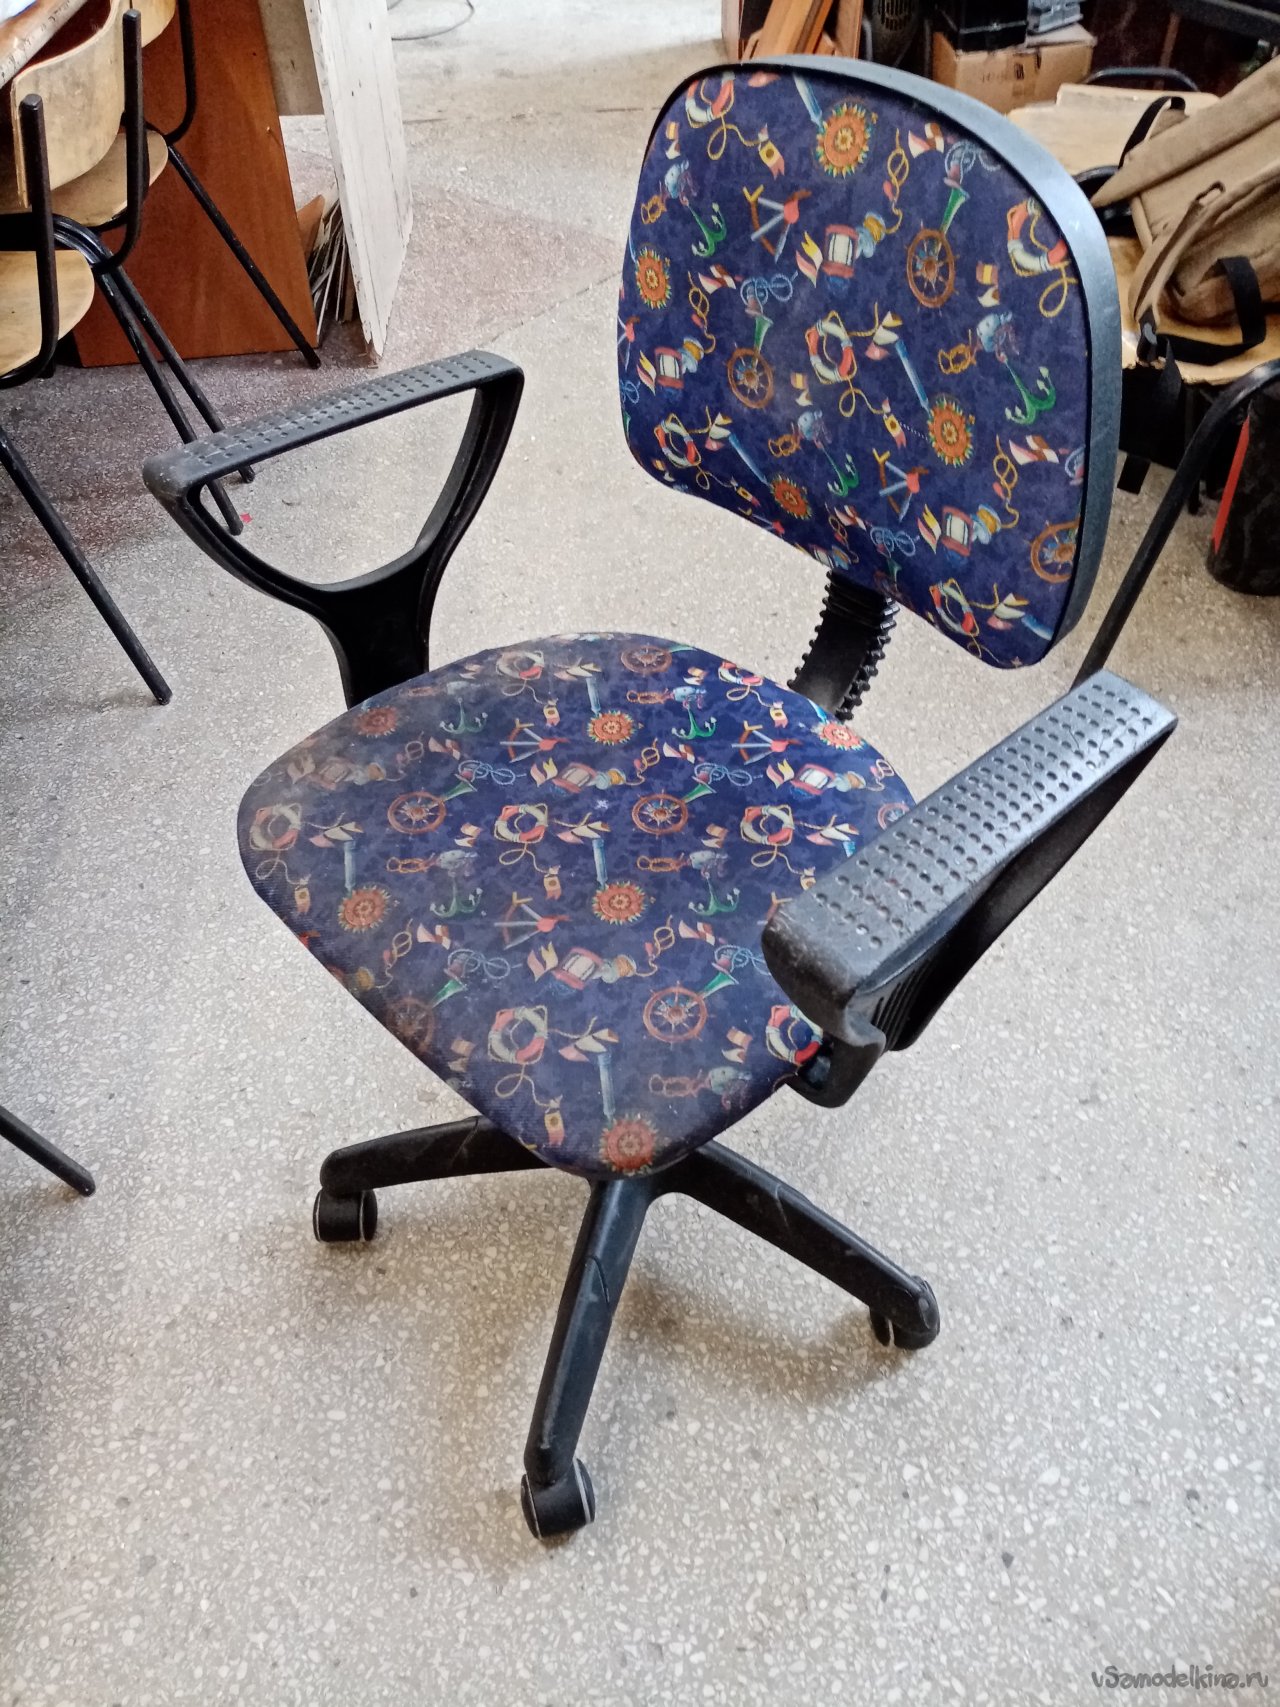 компьютерный стул ремонт спинки